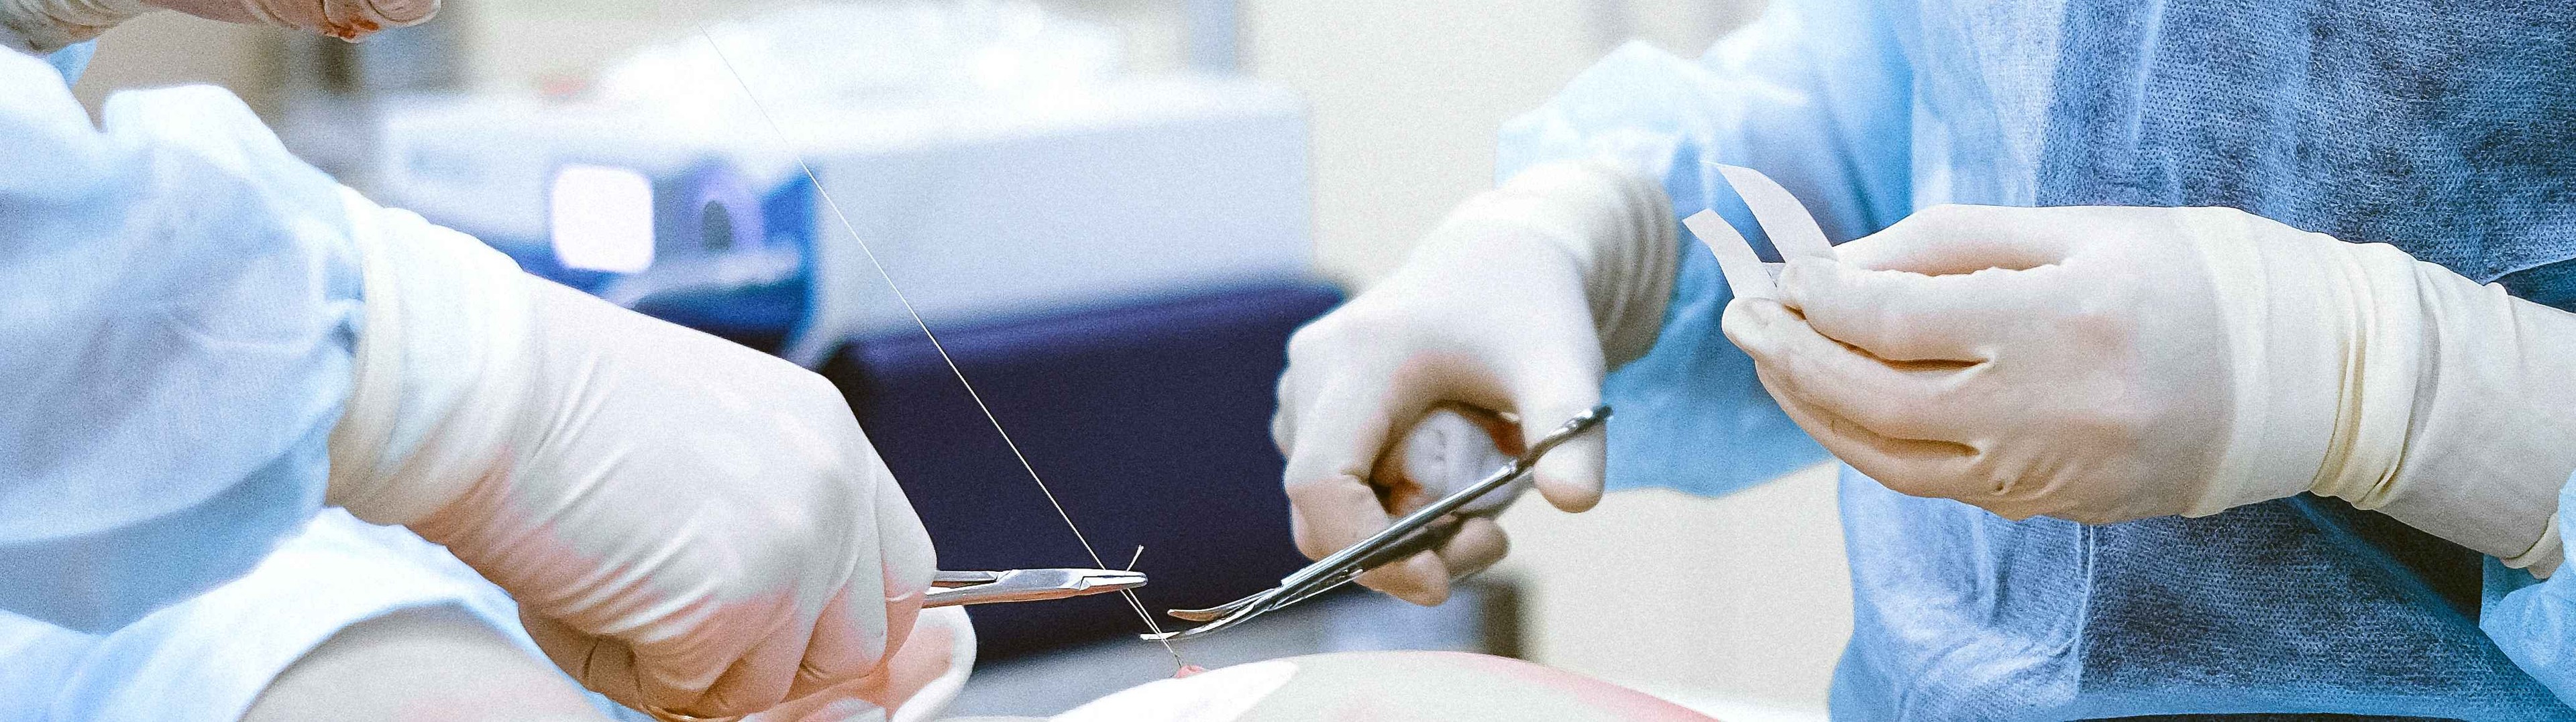 El Hospital La Fe realiza el primer trasplante renal pediátrico a una niña con hipersensibilidad